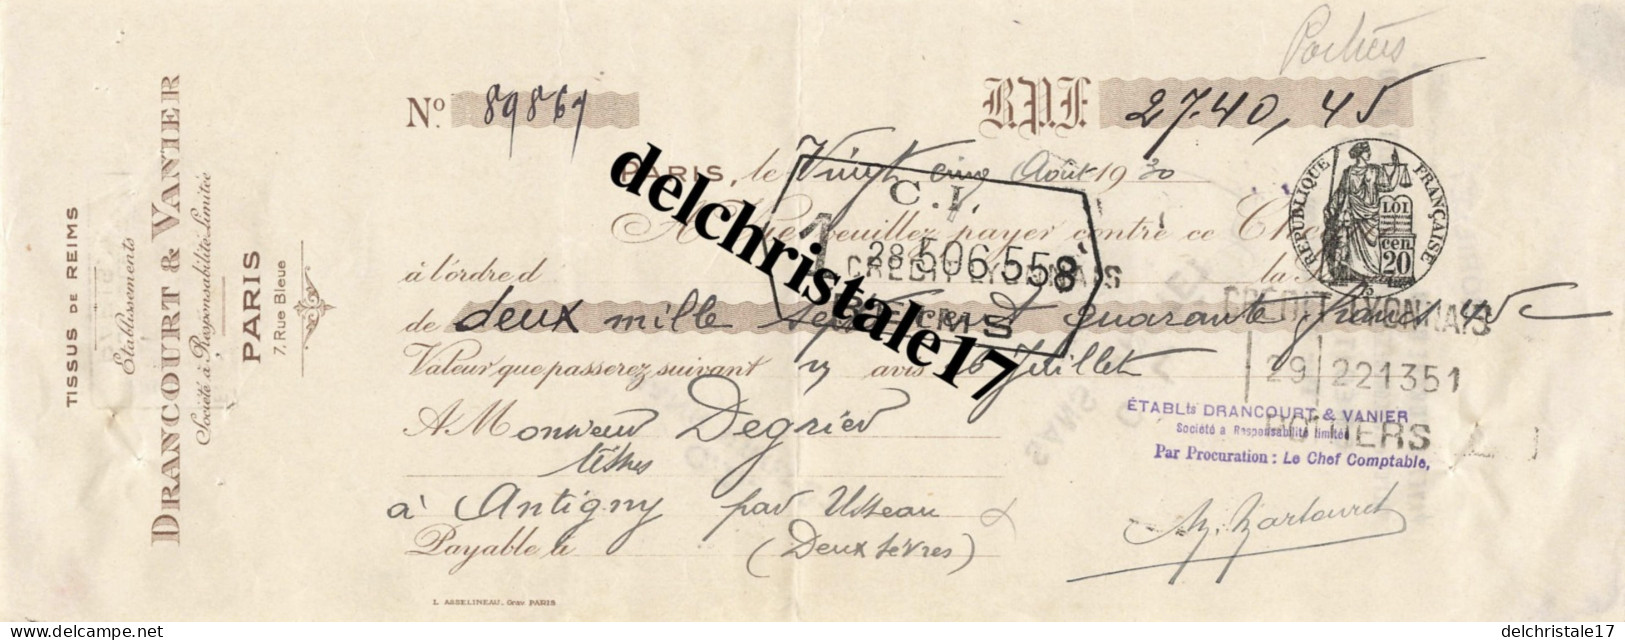 75 0160 PARIS SEINE 1930 Tissus De Reims Éts DRANCOURT & VANIER 7 Rue Bleue à M. DEGRIER TISSUS à ANTIGNY-D'USSEAU (79) - Assegni & Assegni Di Viaggio